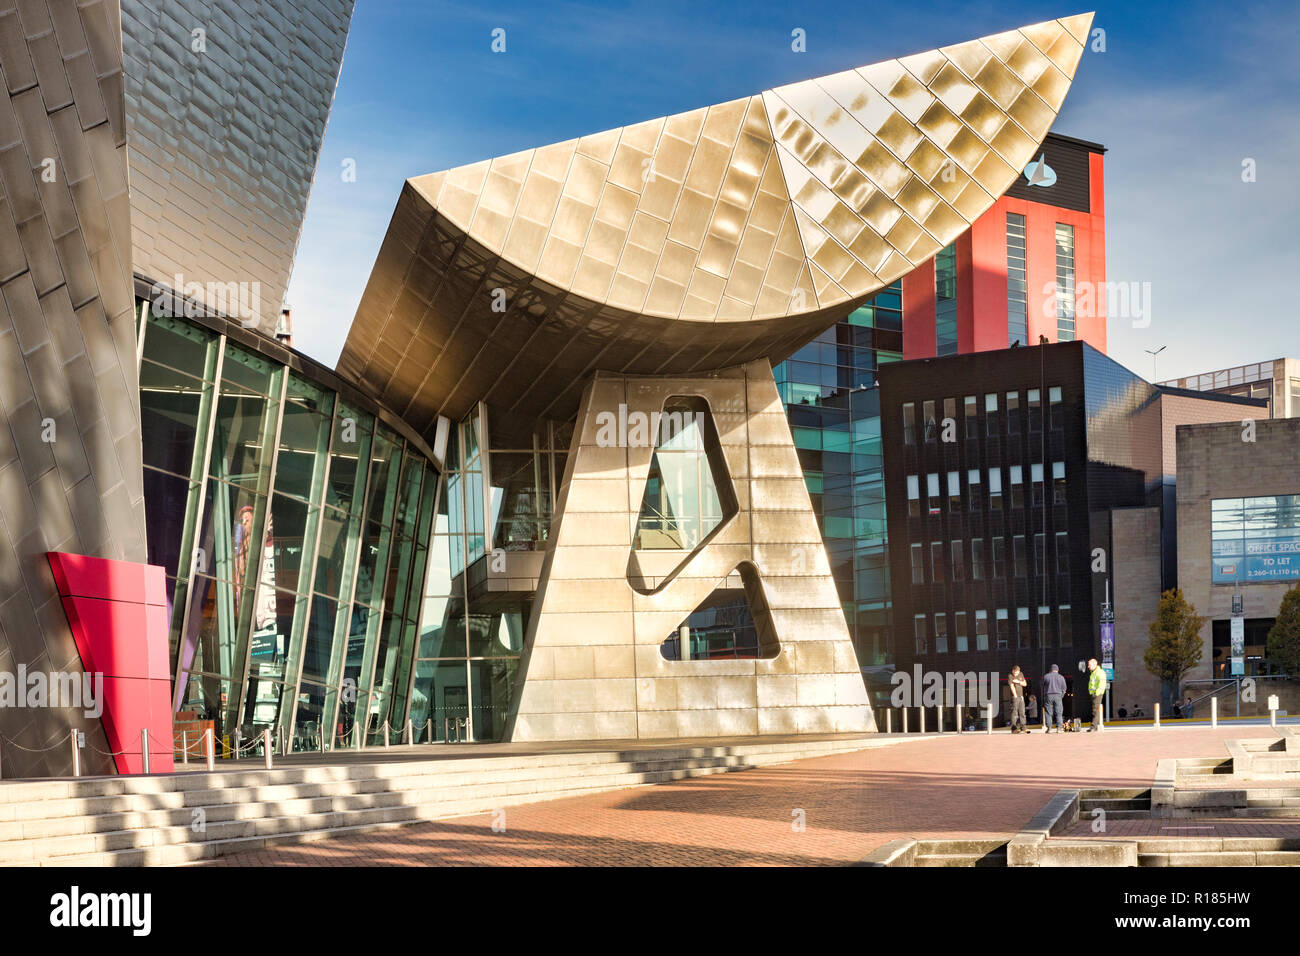 2 novembre 2018 : les quais de Salford, Manchester, UK - The Lowry, la galerie et musée de la vie complexe de L.S. Lowry. Il a été conçu par... Banque D'Images